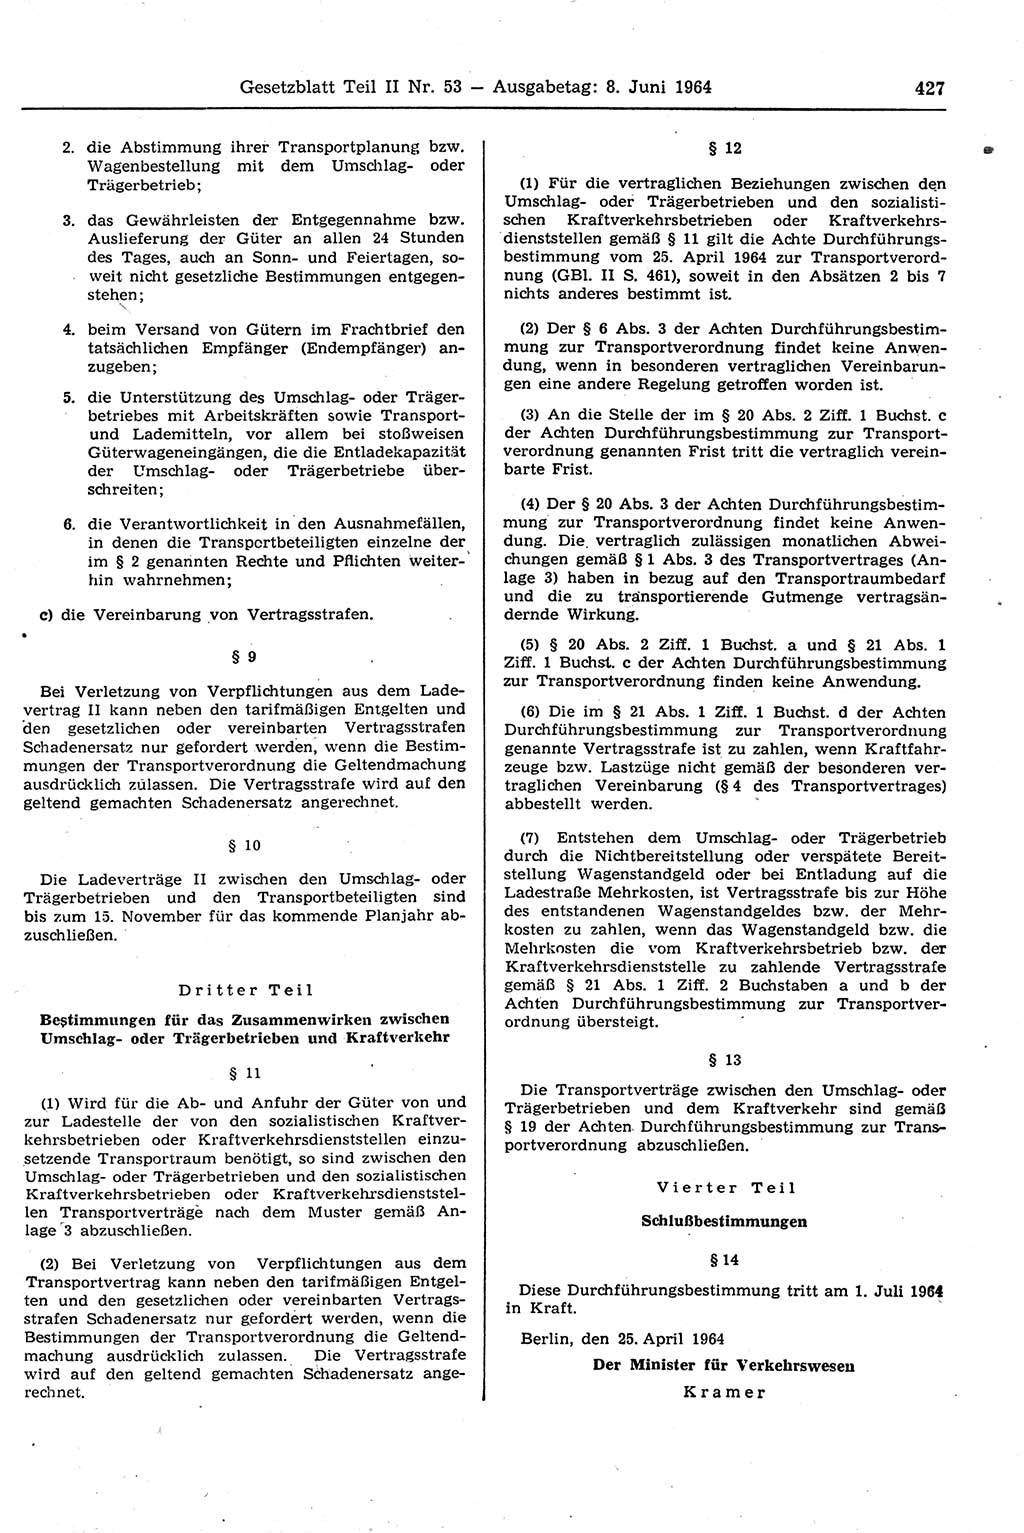 Gesetzblatt (GBl.) der Deutschen Demokratischen Republik (DDR) Teil ⅠⅠ 1964, Seite 427 (GBl. DDR ⅠⅠ 1964, S. 427)